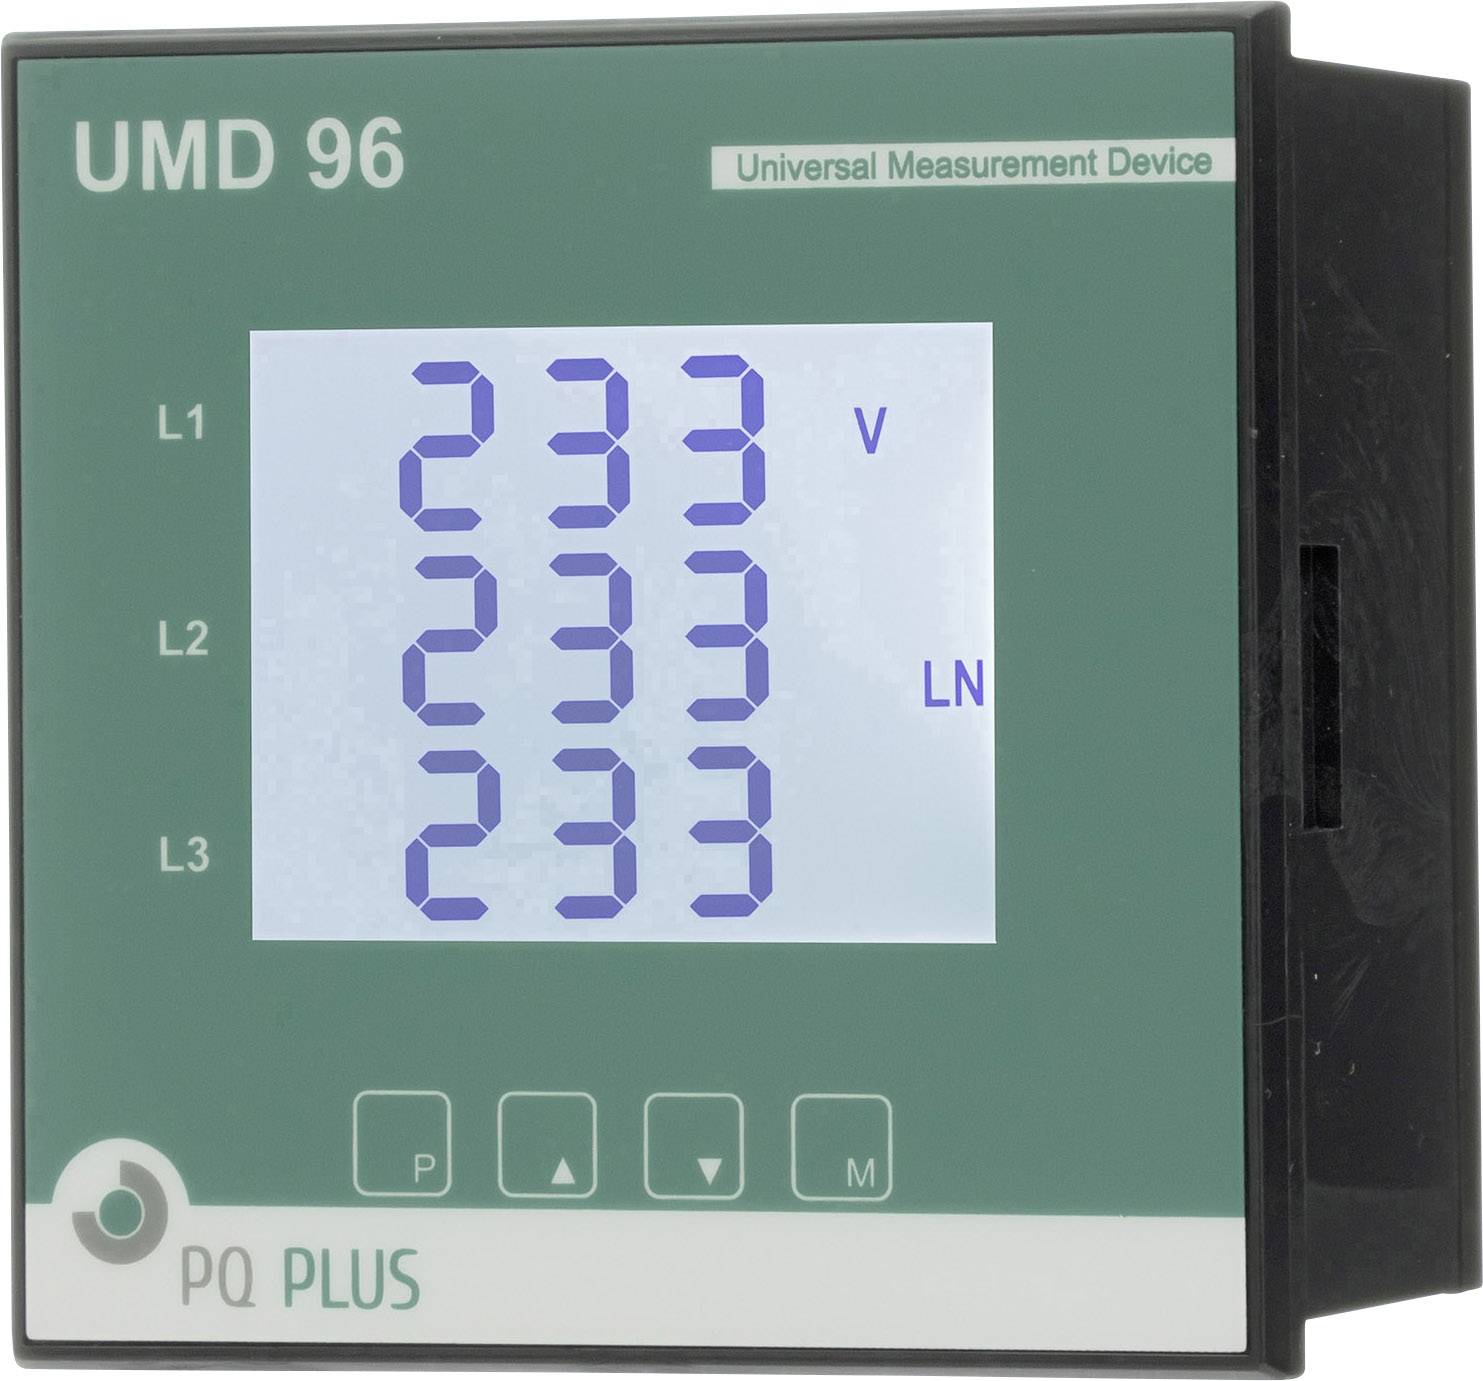 PQ PLUS UMD 96M UMD 96M Universalmessgerät - Schalttafeleinbau - M-Bus Einbaumaße 96 x 96 mm